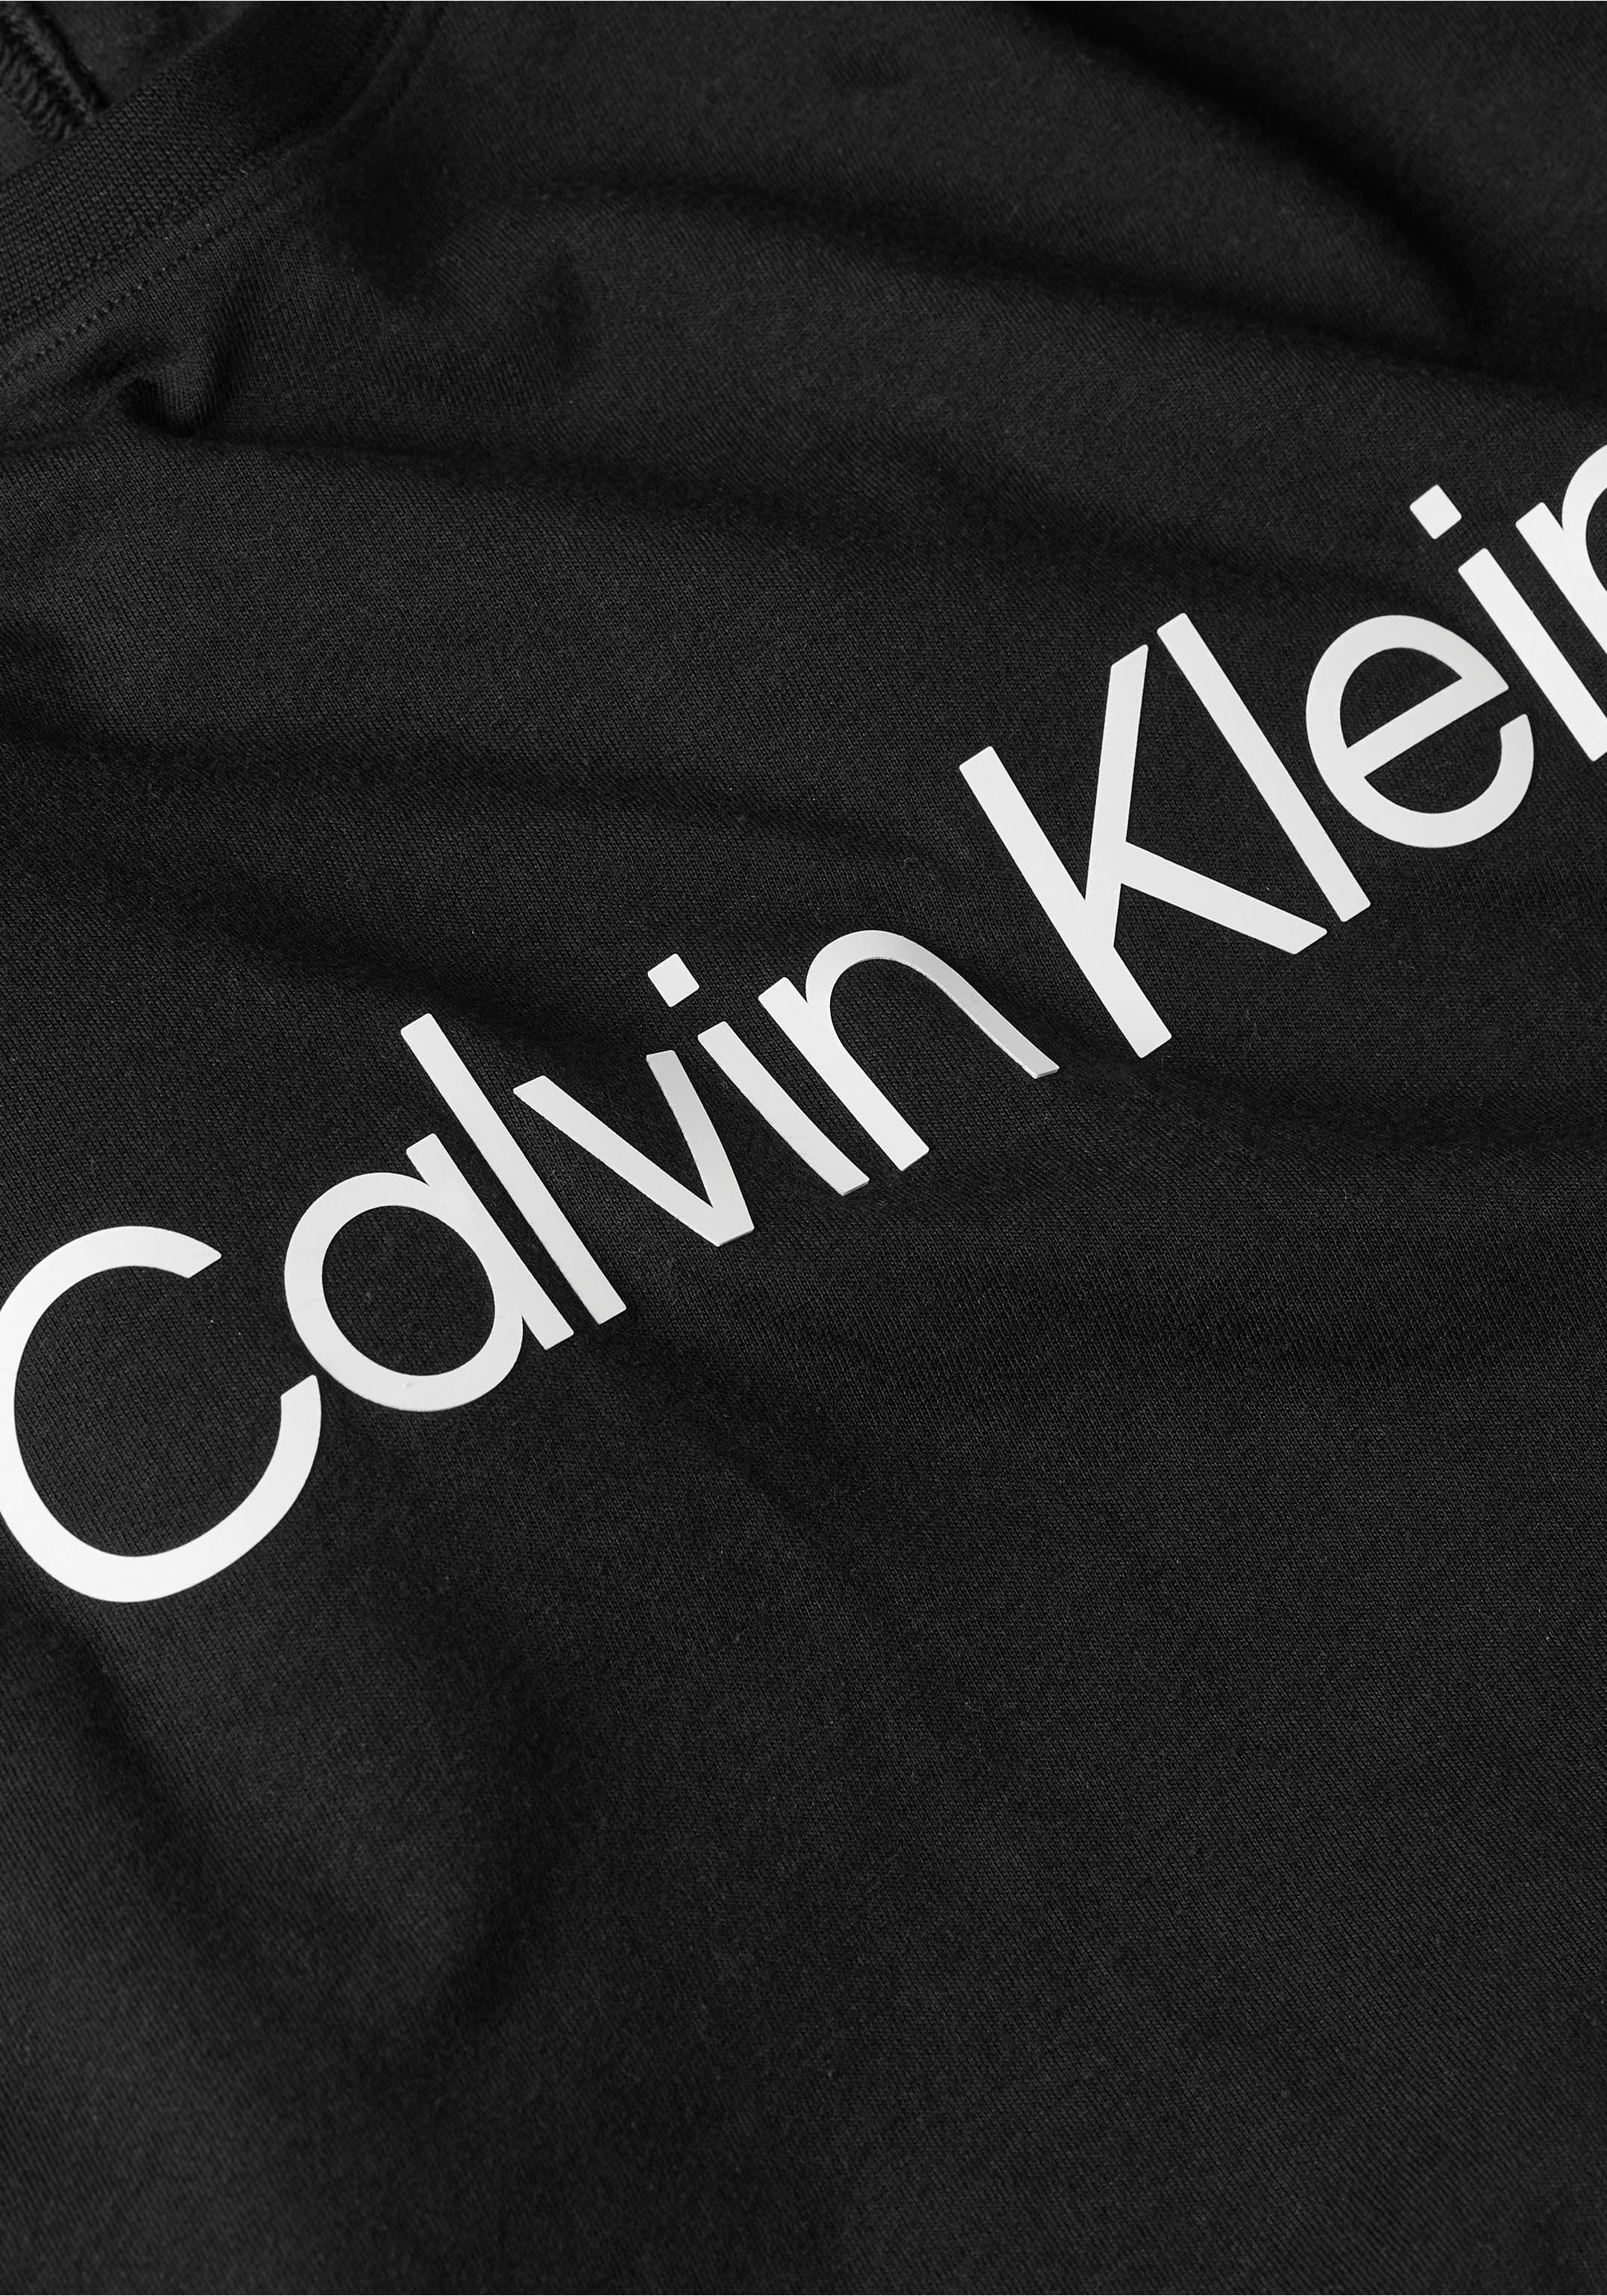 T-Shirt Calvin Klein Sport